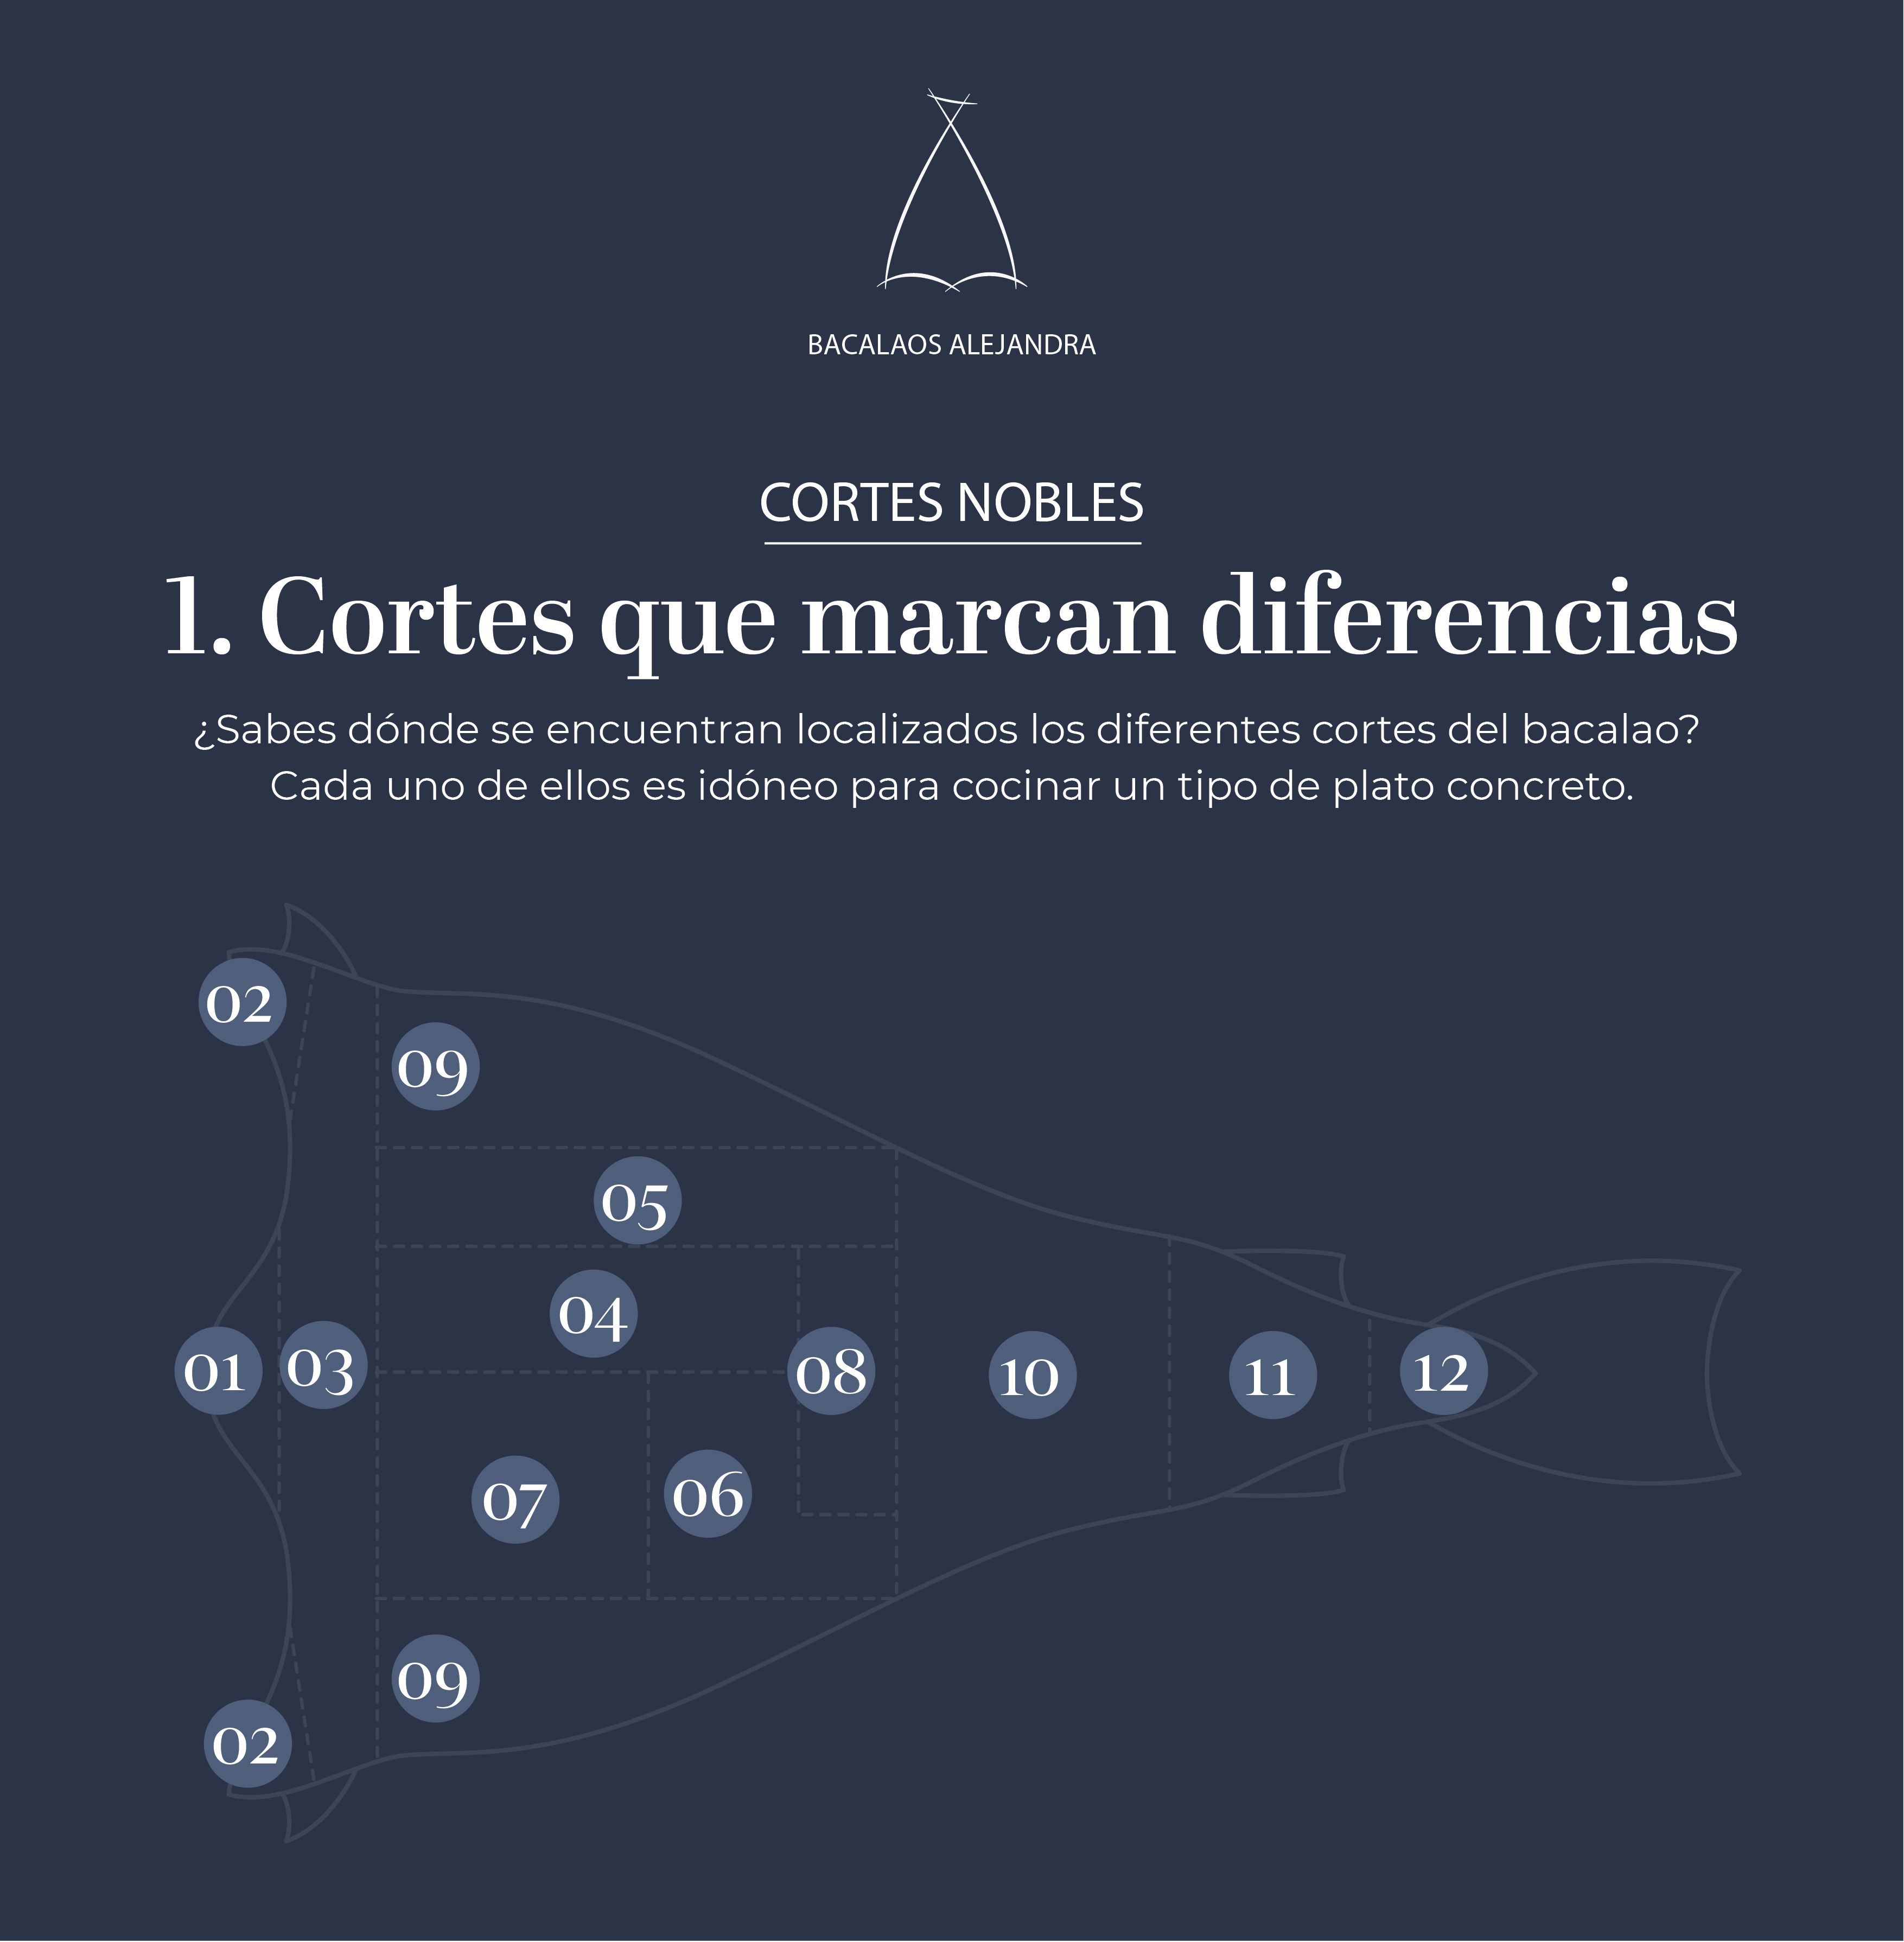 Bacalaos Alejandra: cortes que marcan la diferencia (I)